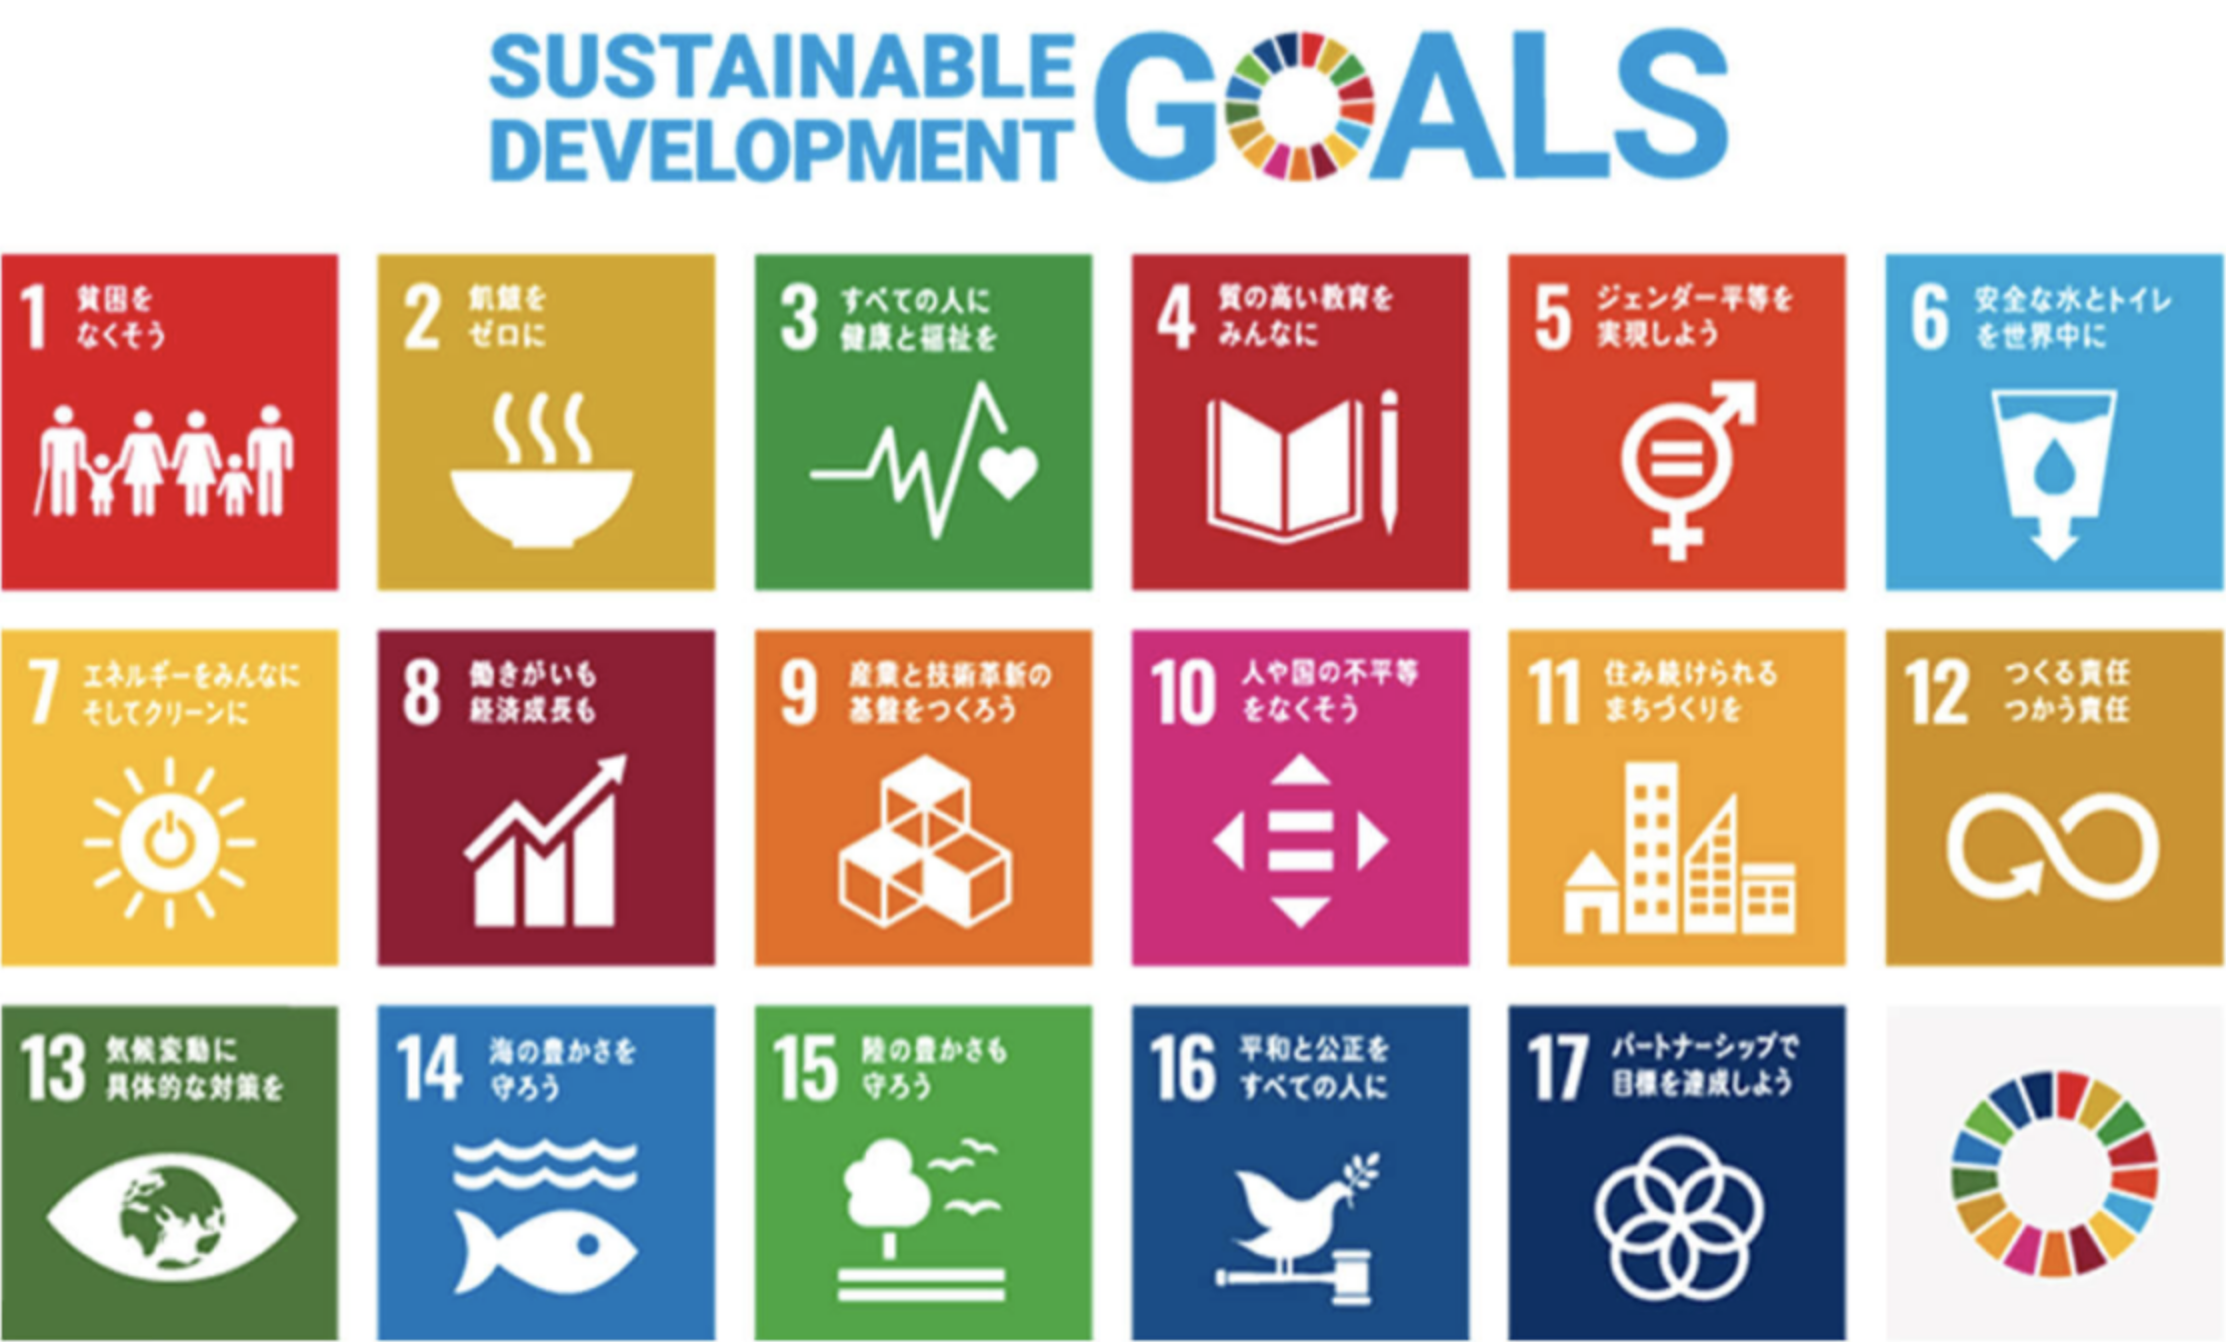 Sustainable Development Goals(持続可能な開発目標)